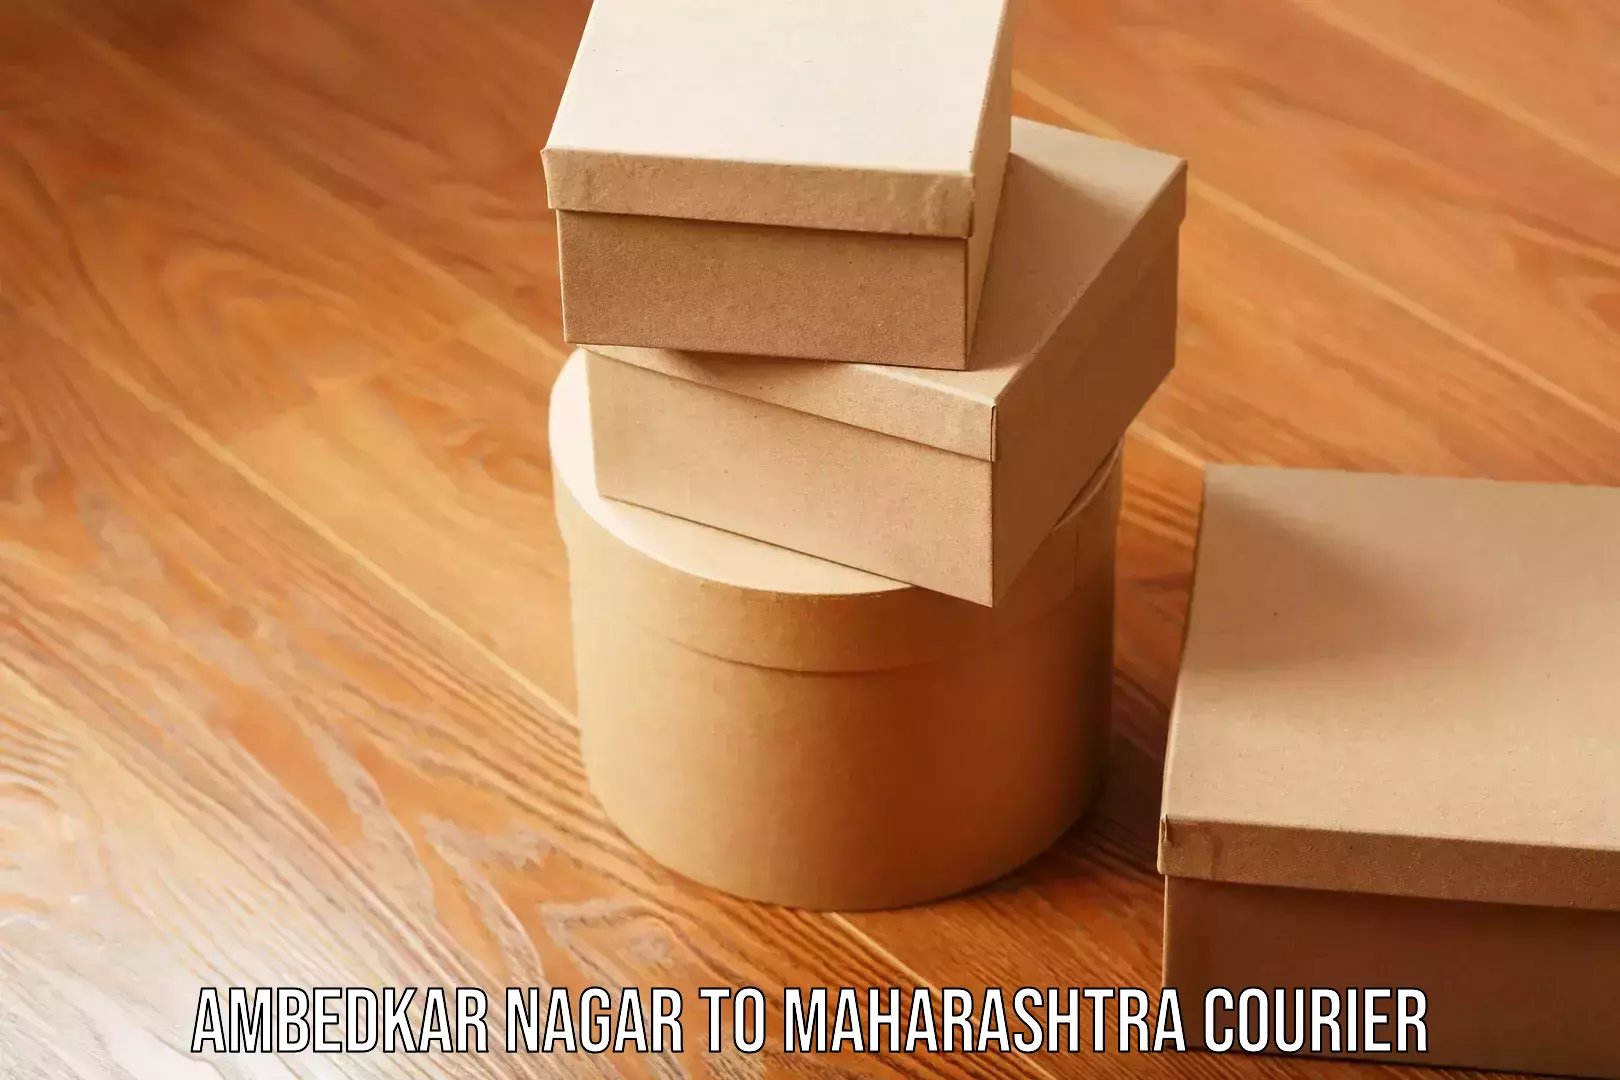 Business shipping needs Ambedkar Nagar to Maharashtra